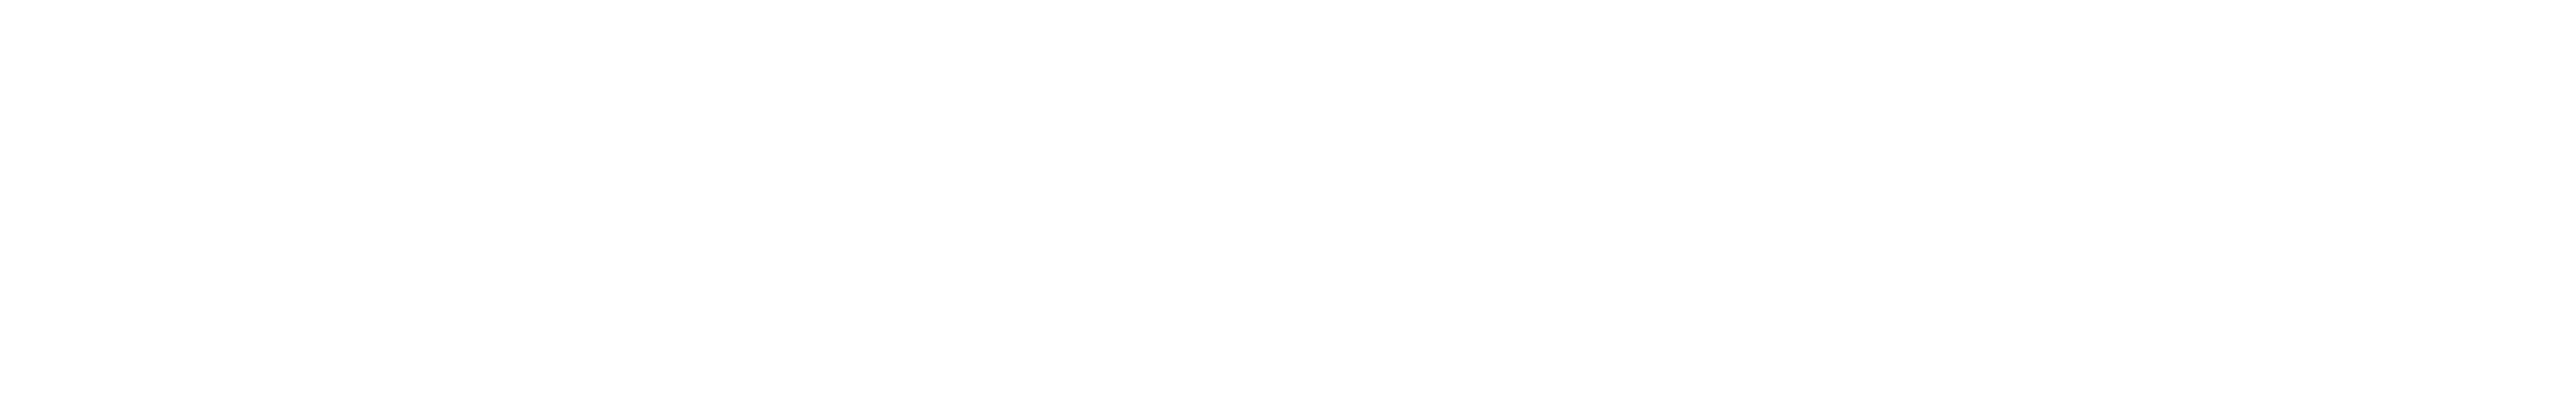 CODESYS GmbH